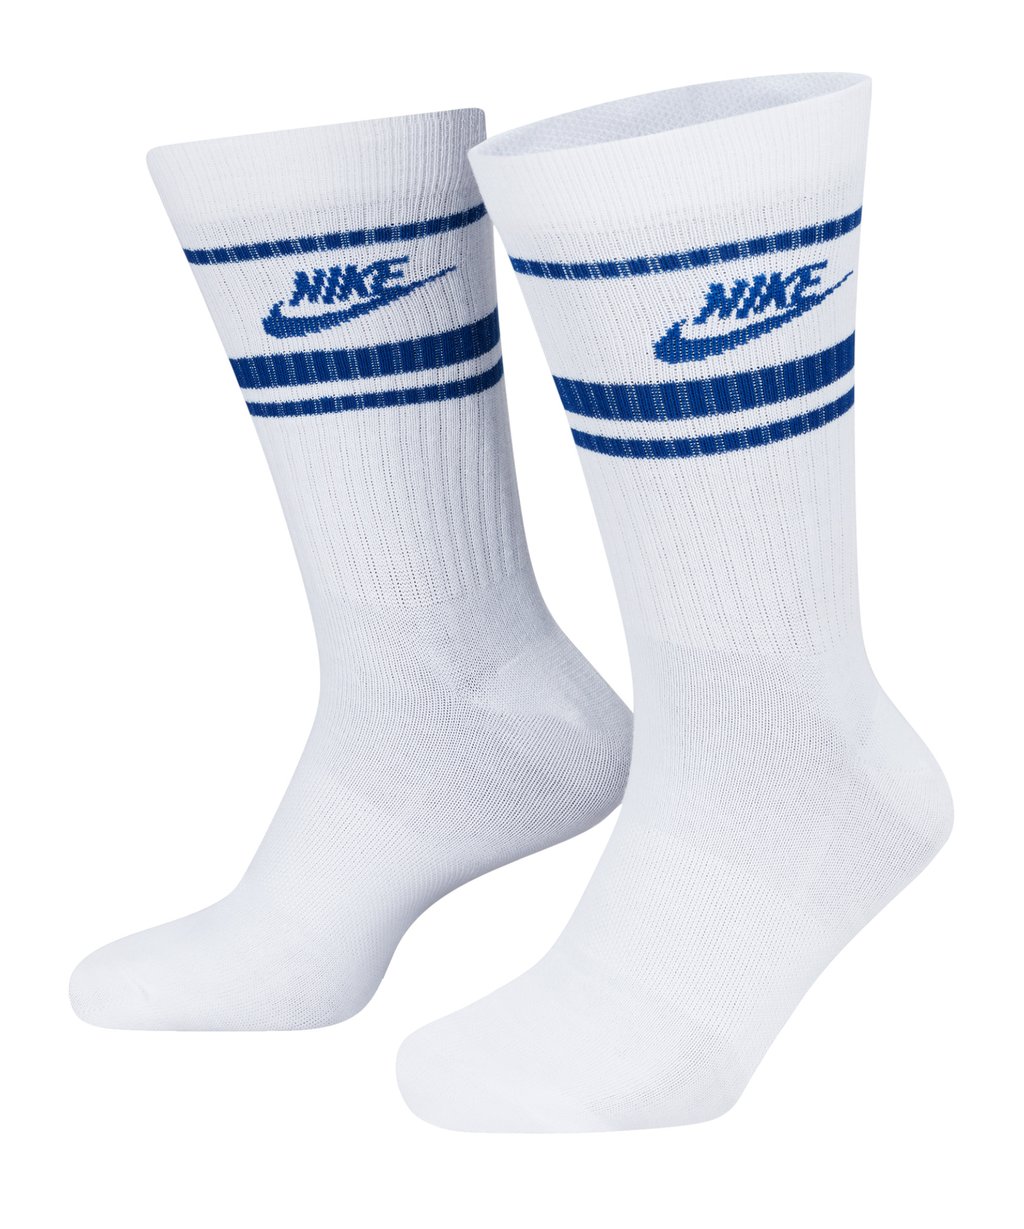 Спортивные носки Nike цена и фото